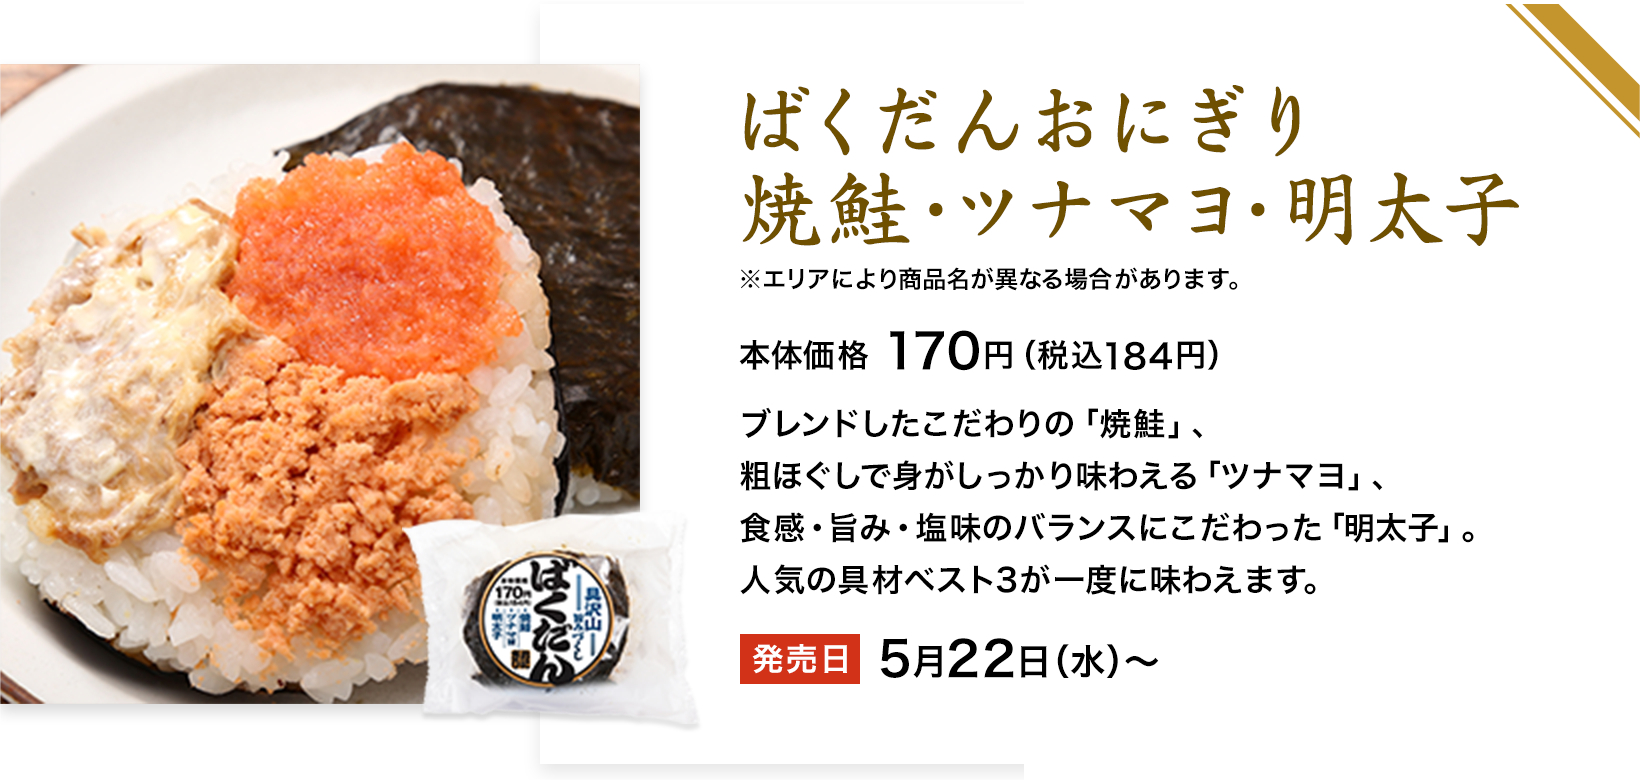 ばくだんおにぎり焼鮭・ツナマヨ・明太子鮭ツナマヨ博多明太子 ※エリアにより商品名が異なる場合があります。 本体価格 170円（税込184円） ブレンドしたこだわりの「焼鮭」、粗ほぐしで身がしっかり味わえる「ツナマヨ」、食感・旨み・塩味のバランスにこだわった「明太子」。人気の具材ベスト3が一度に味わえます。 発売日 5月22日（水）〜